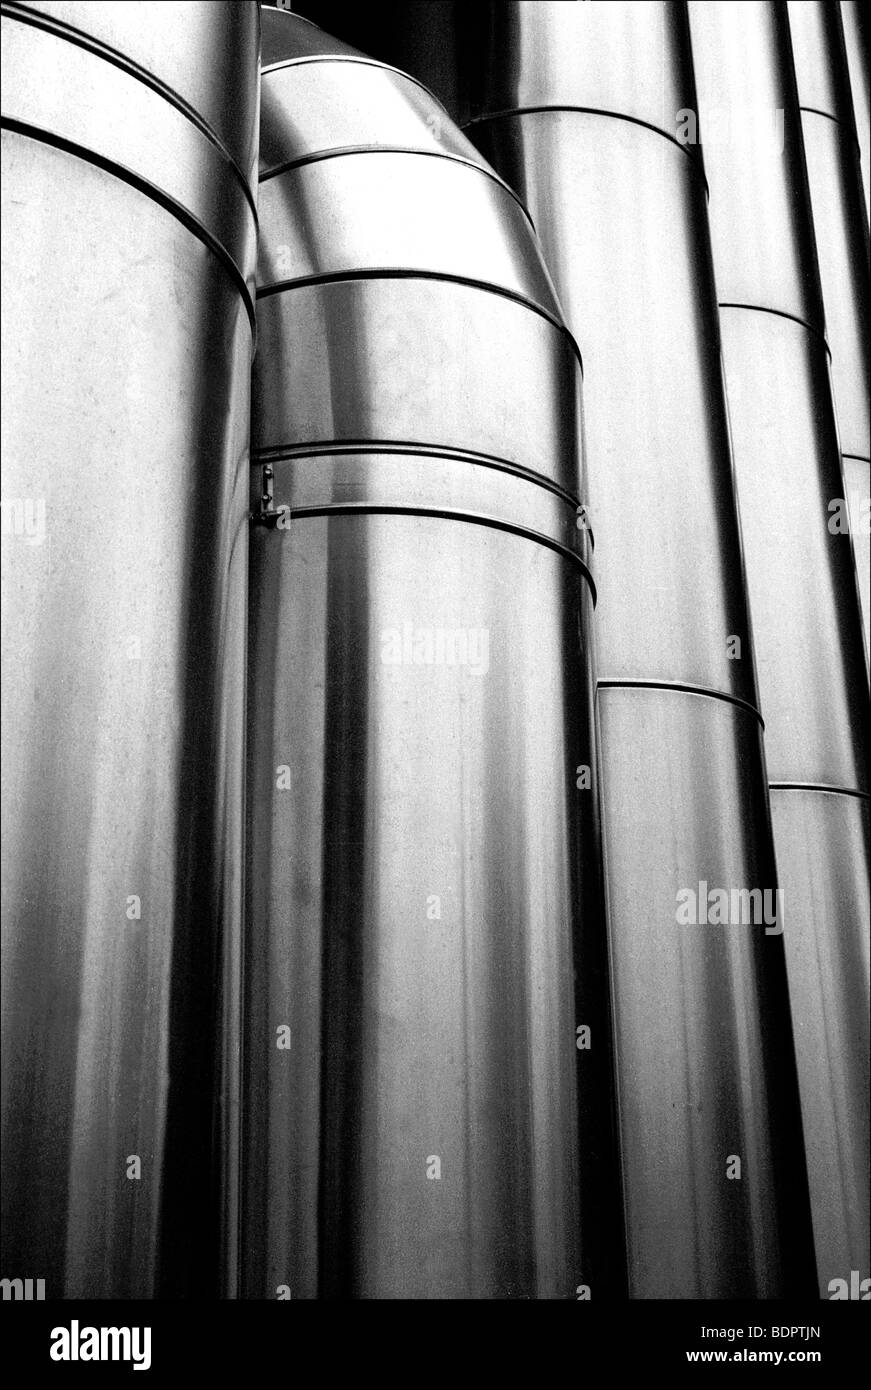 Tubos de aluminio Foto de stock